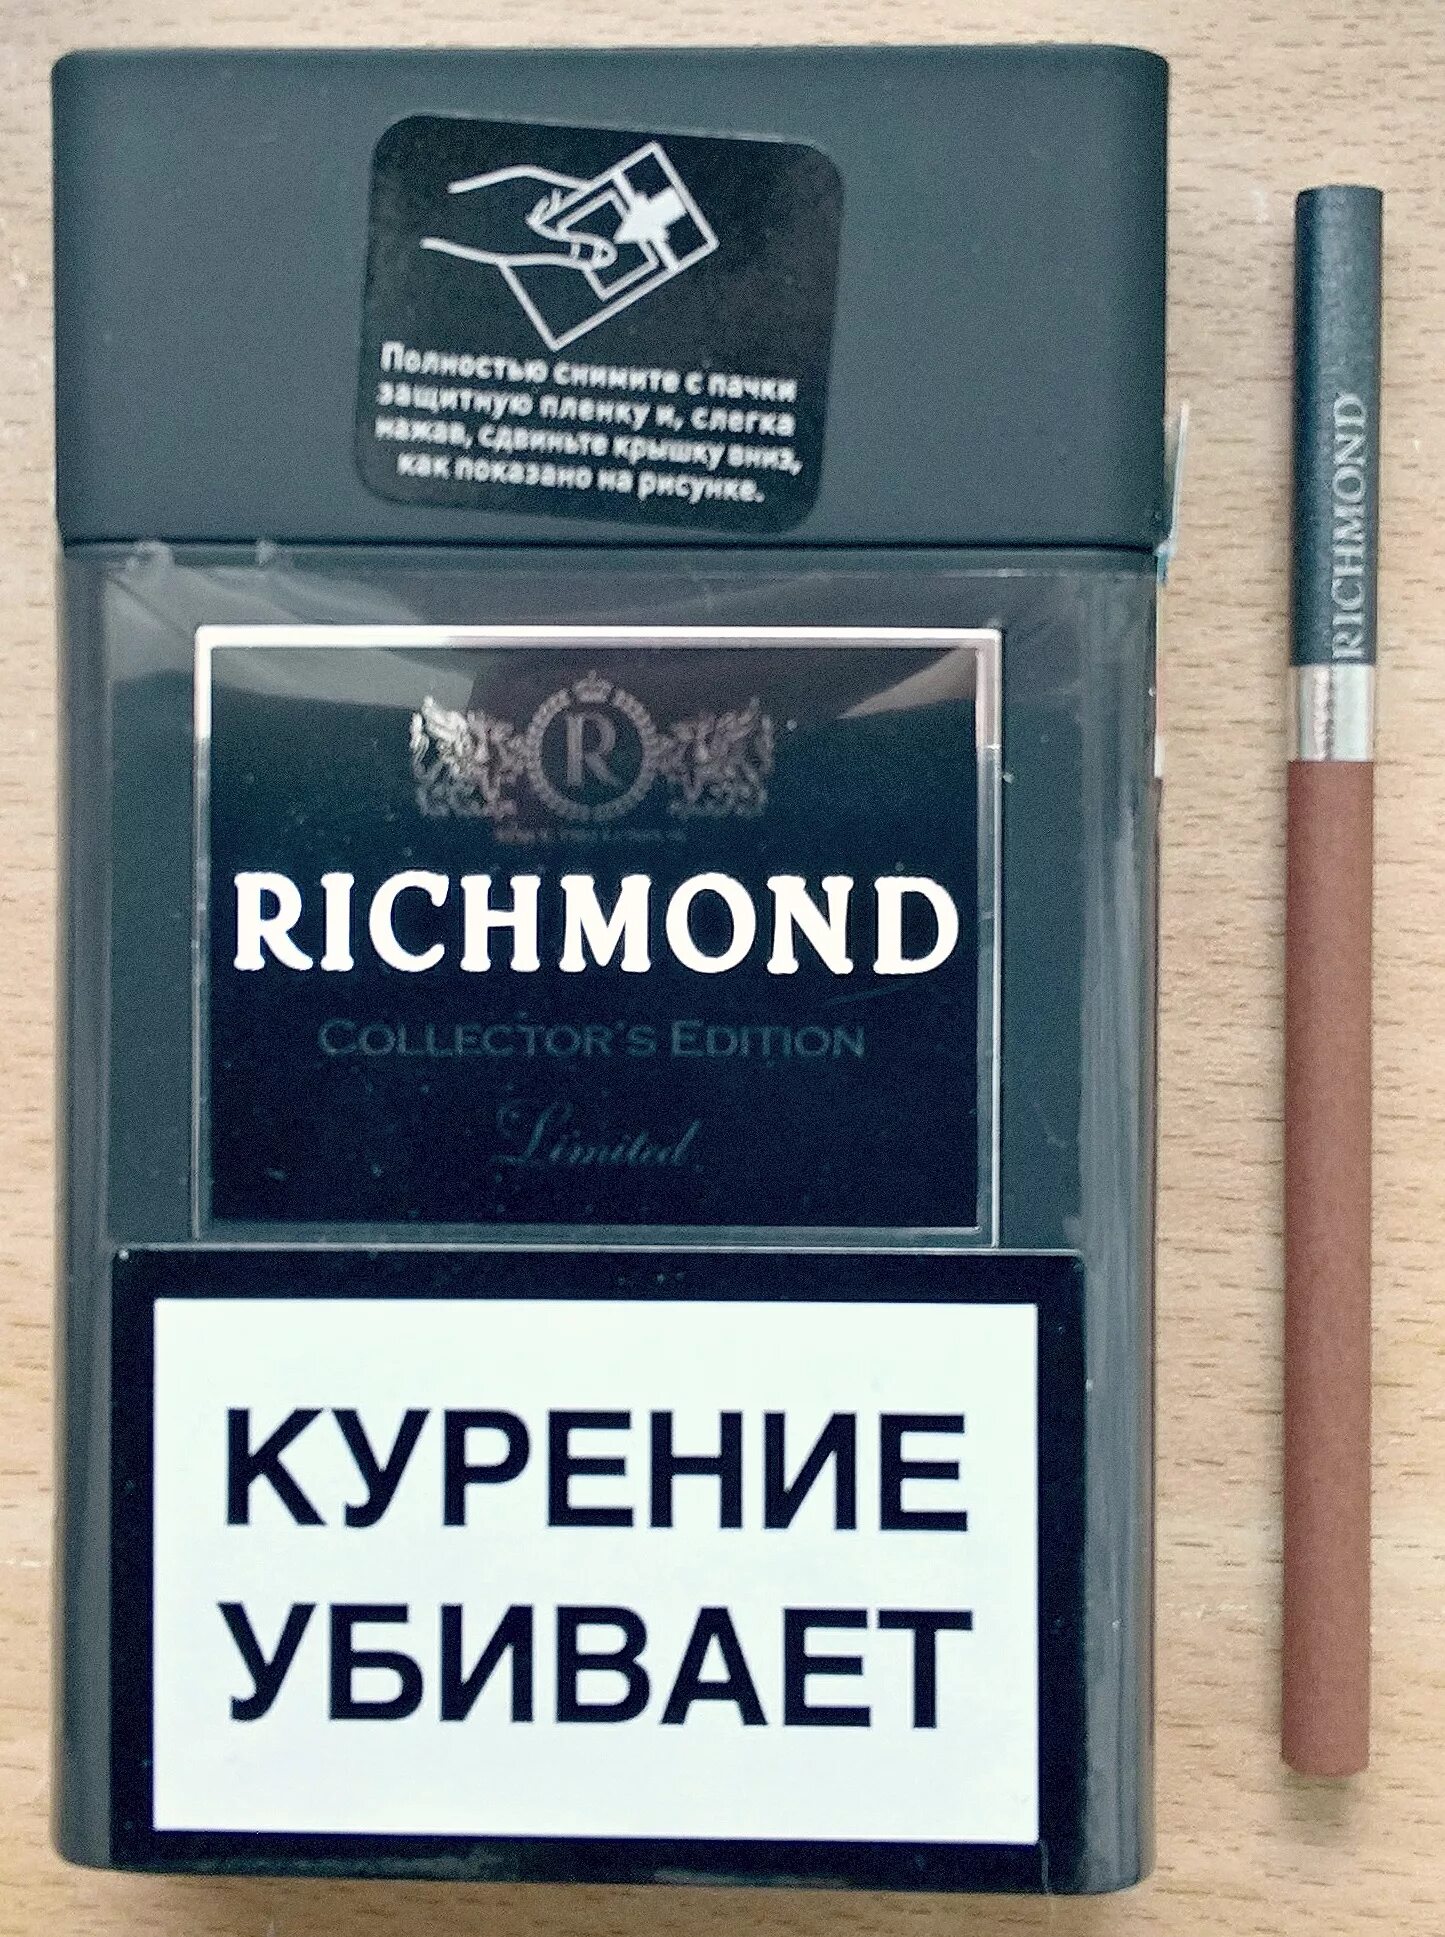 Ричмонд сигареты шоколадные. Сигареты Ричмонд Блэк эдитион. Sobranie Richmond сигареты. Сигареты Richmond Compact. Ричмонд шоколадные